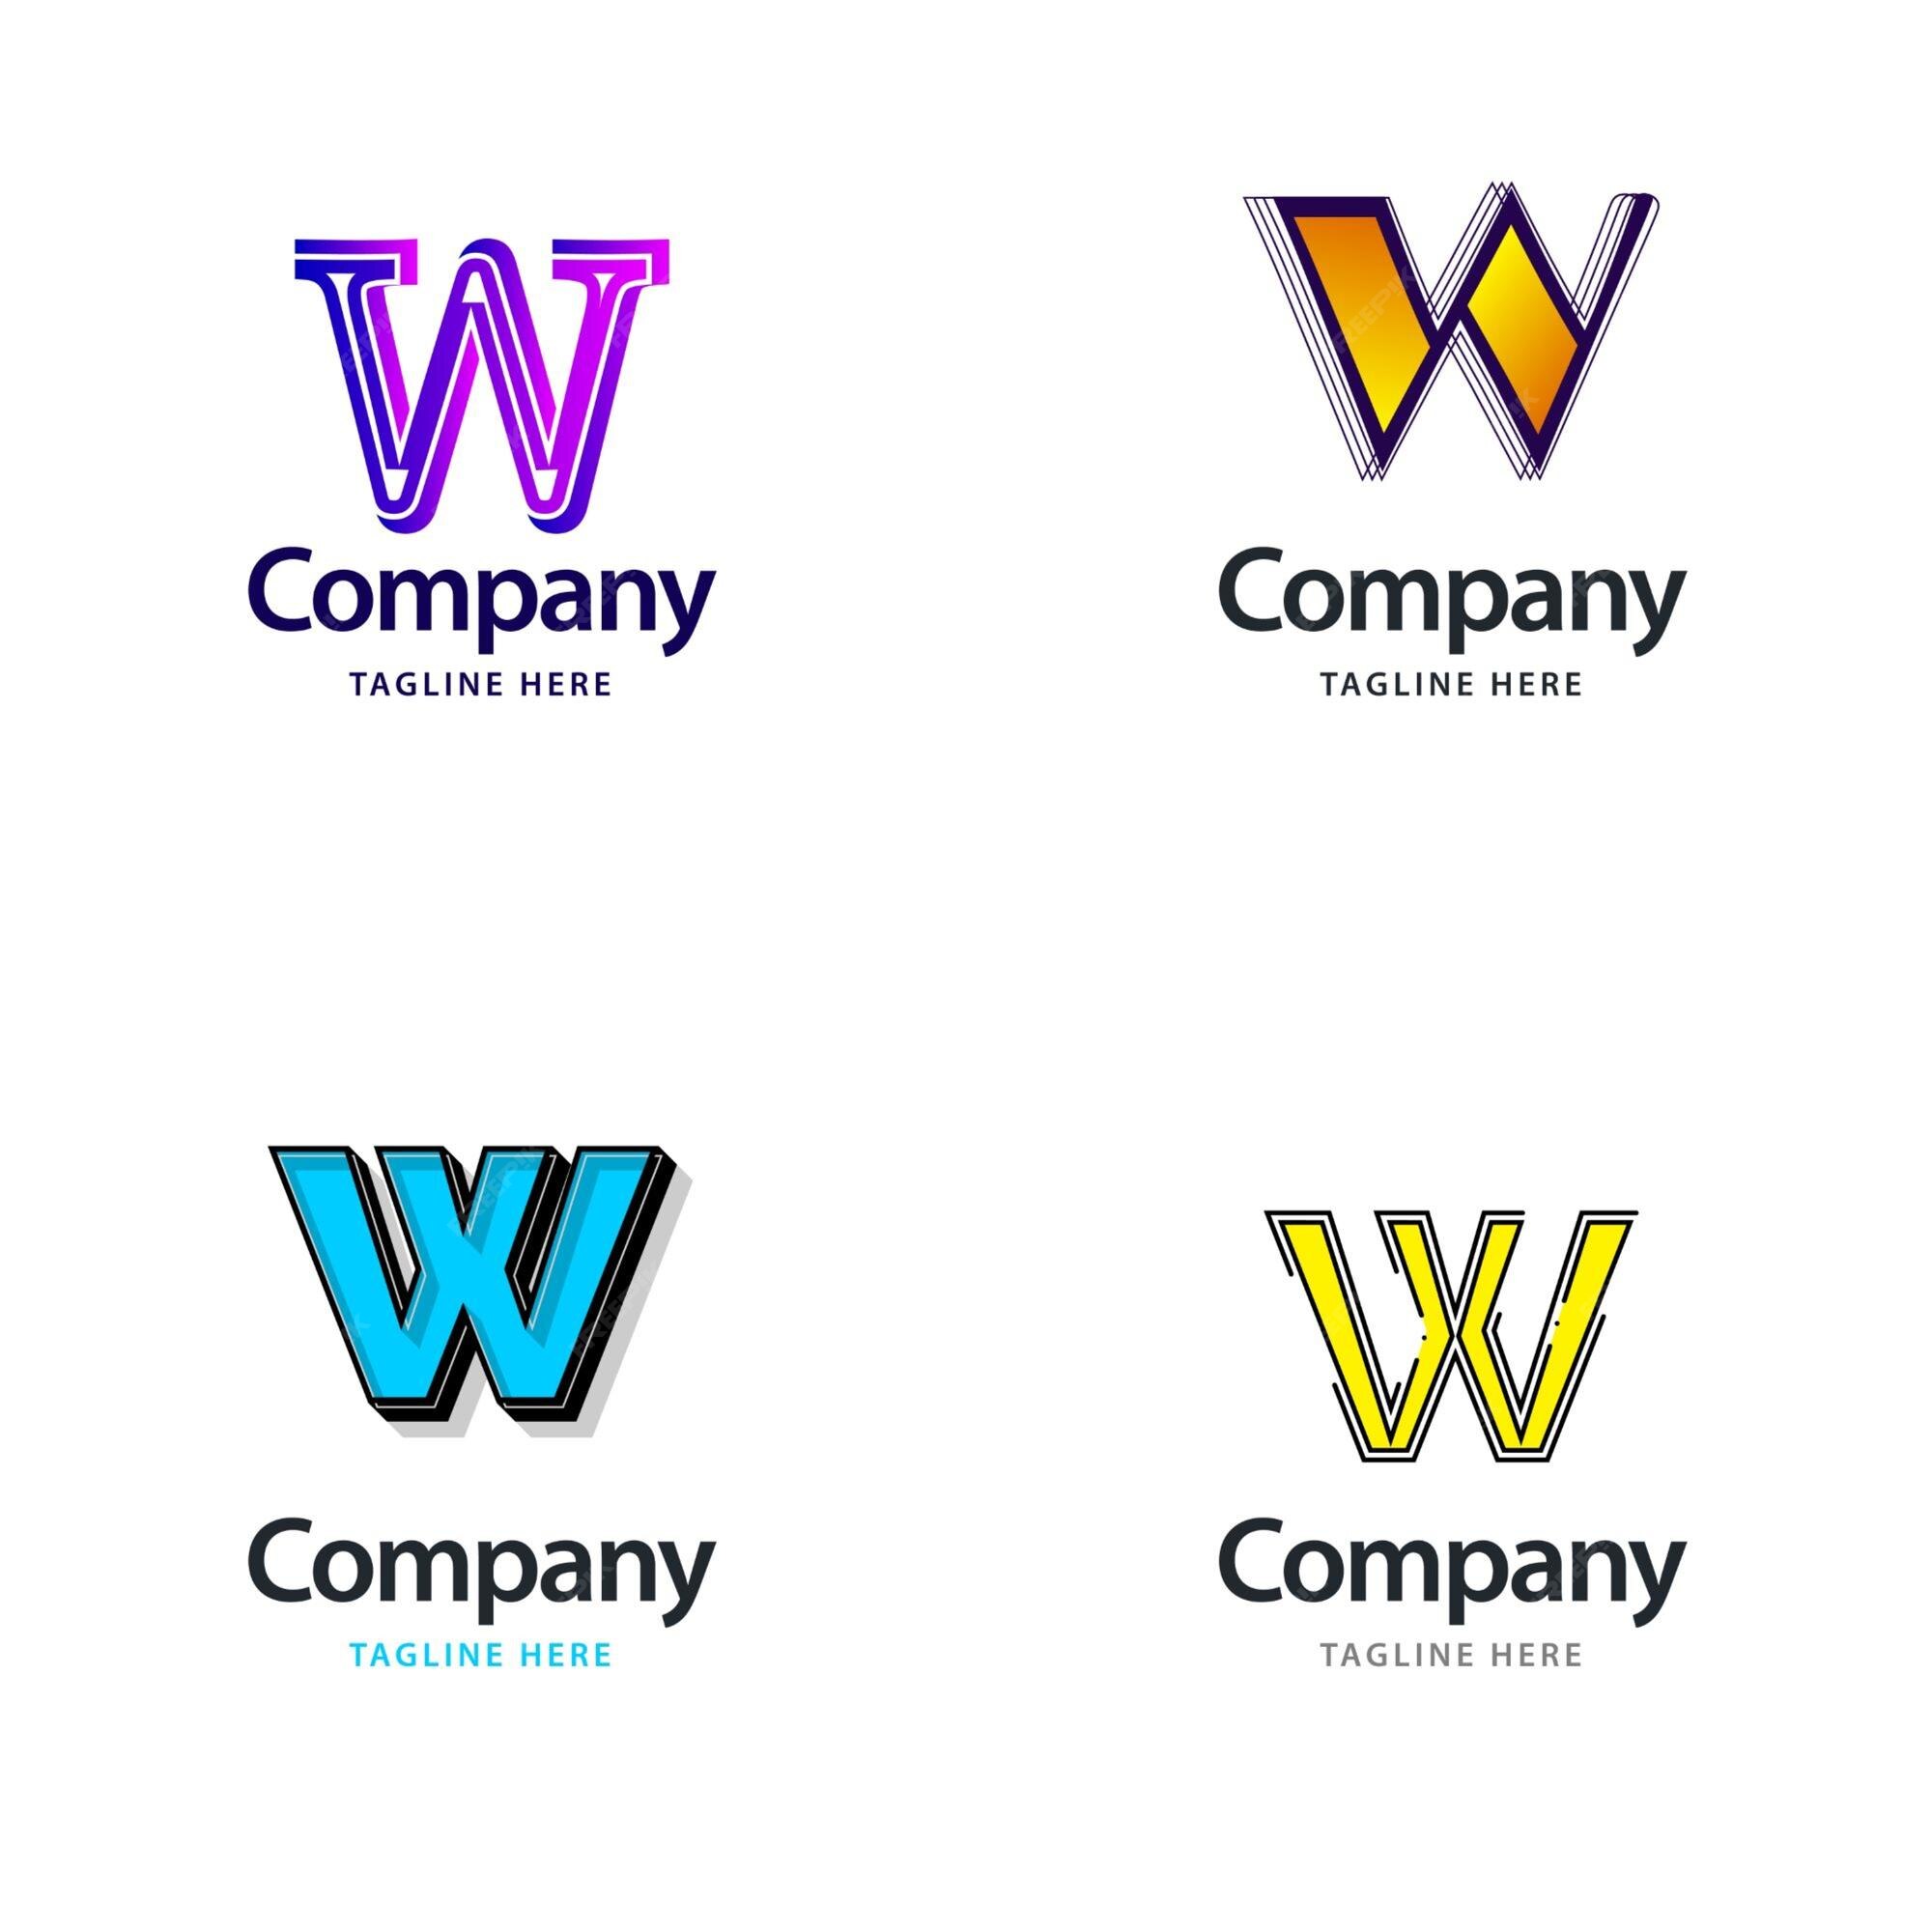 W company logo Royalty Free Vector Image - VectorStock